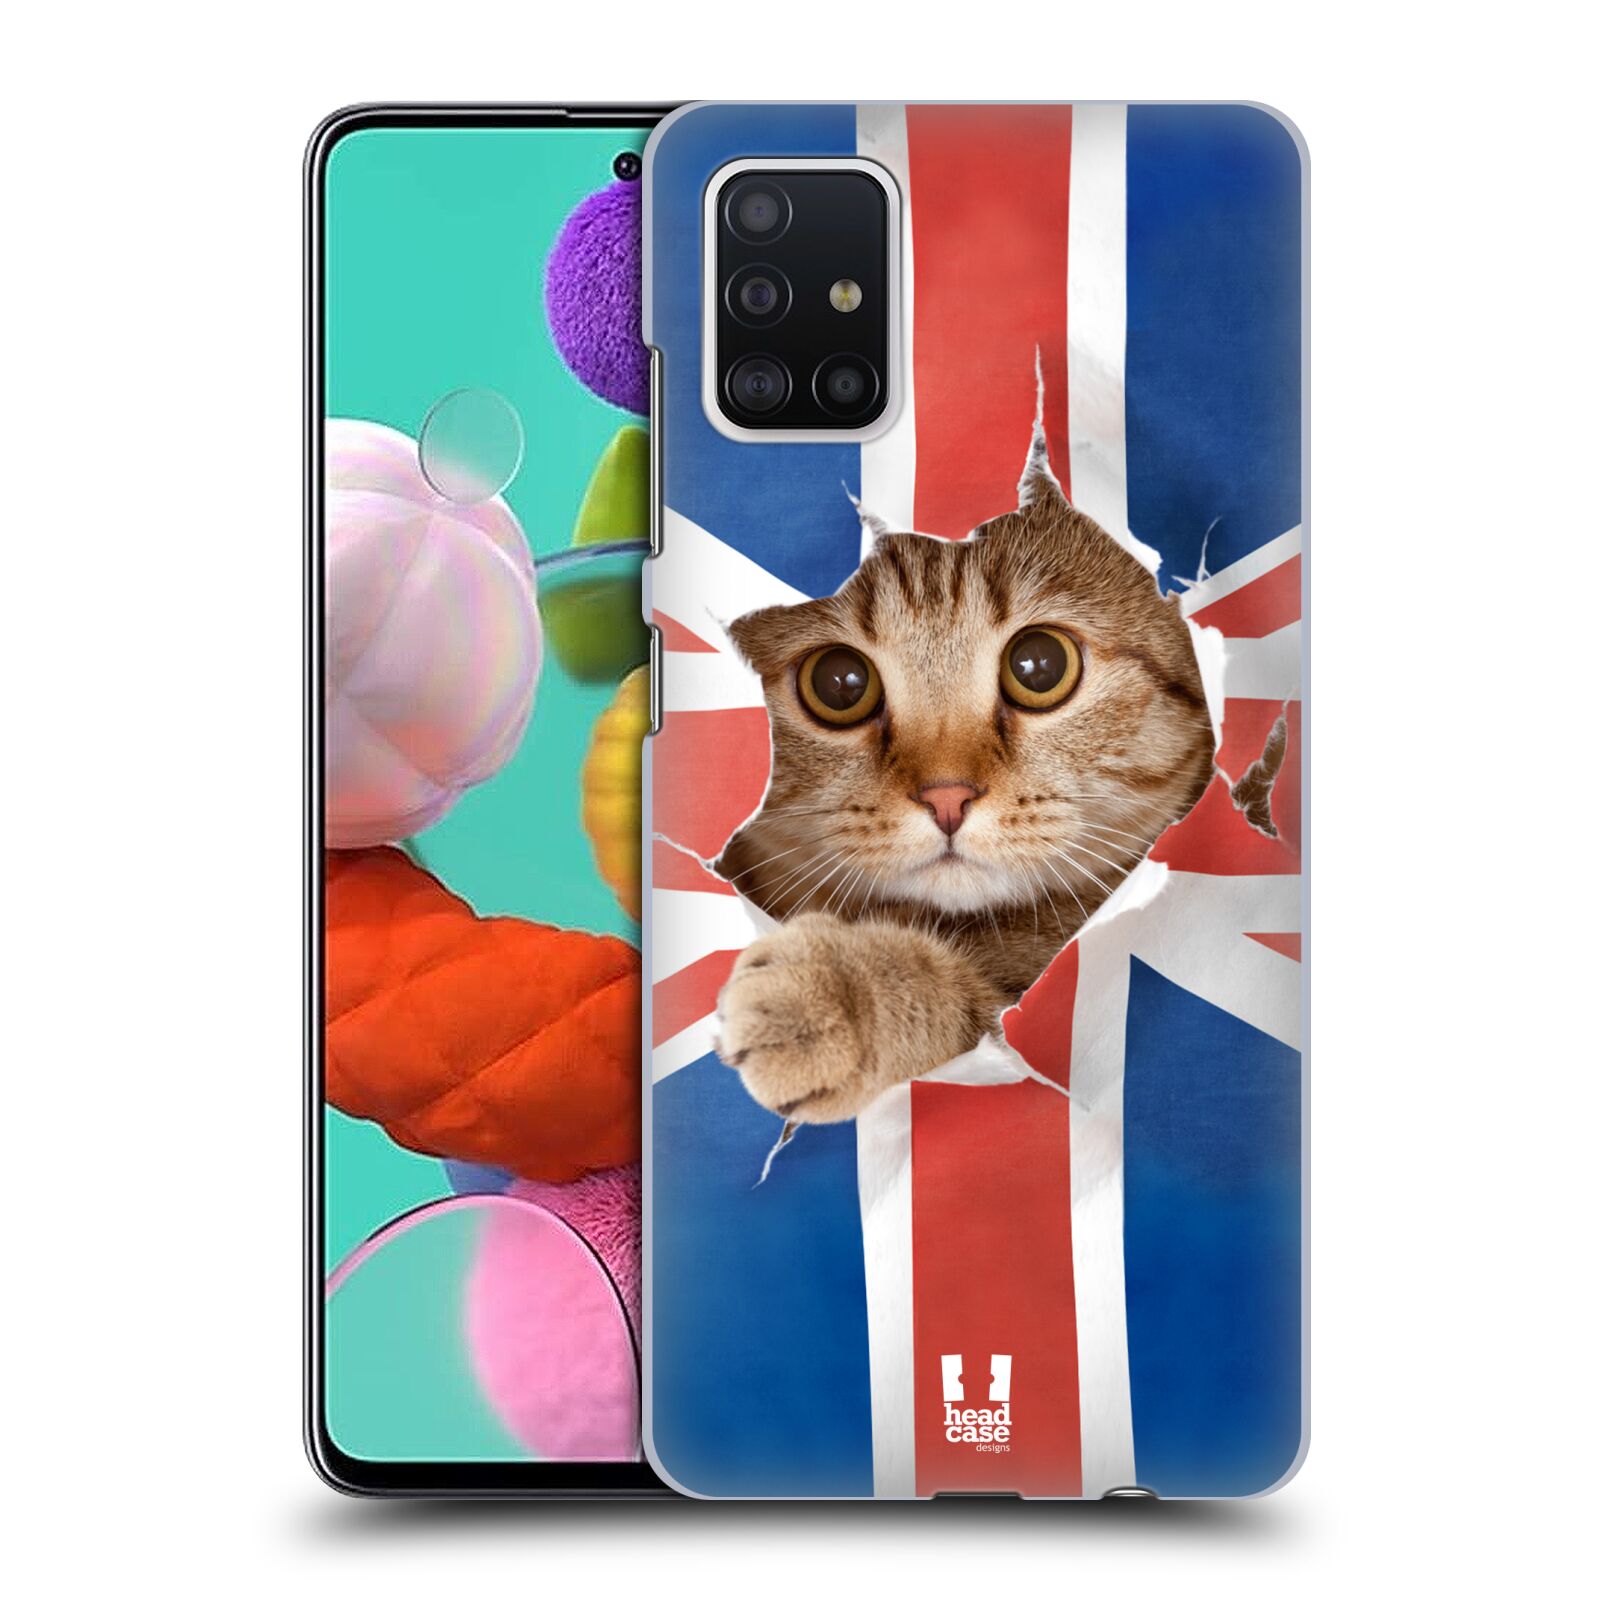 Pouzdro na mobil Samsung Galaxy A51 - HEAD CASE - vzor Legrační zvířátka kočička a Velká Británie vlajka